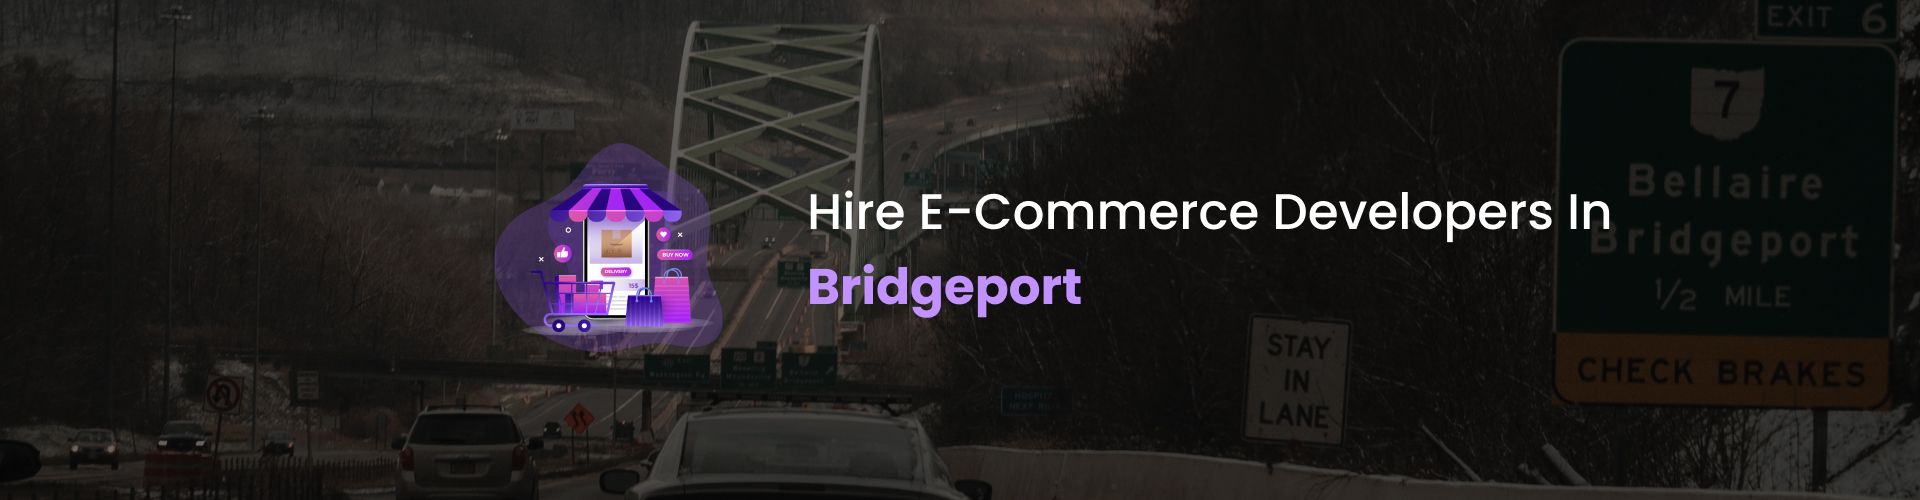 ecommerce developers in bridgeport